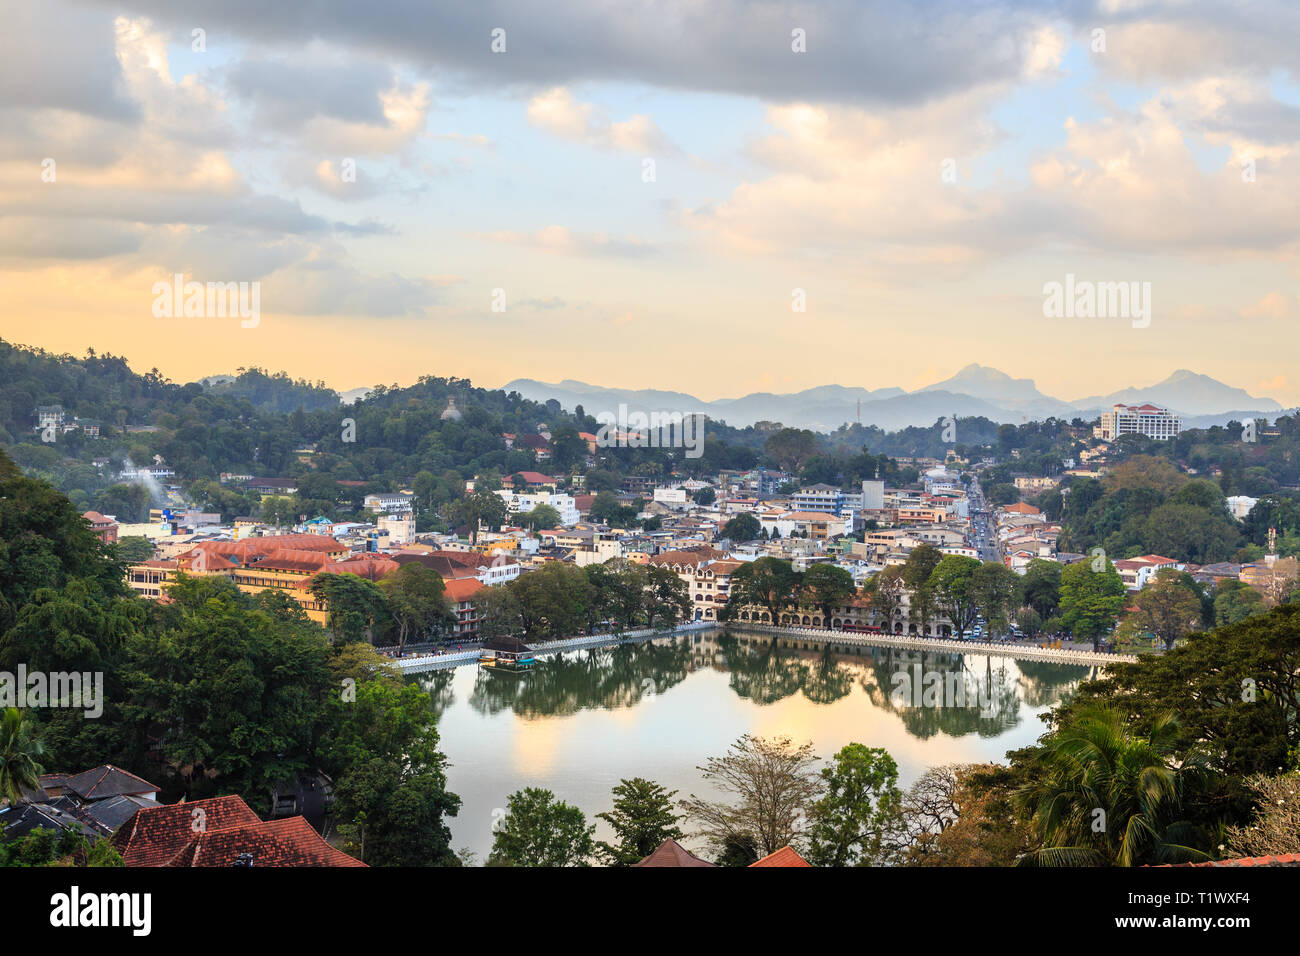 La ville de Kandy avec Srilankan panorama du lac au premier plan, la province du Centre, au Sri Lanka Banque D'Images